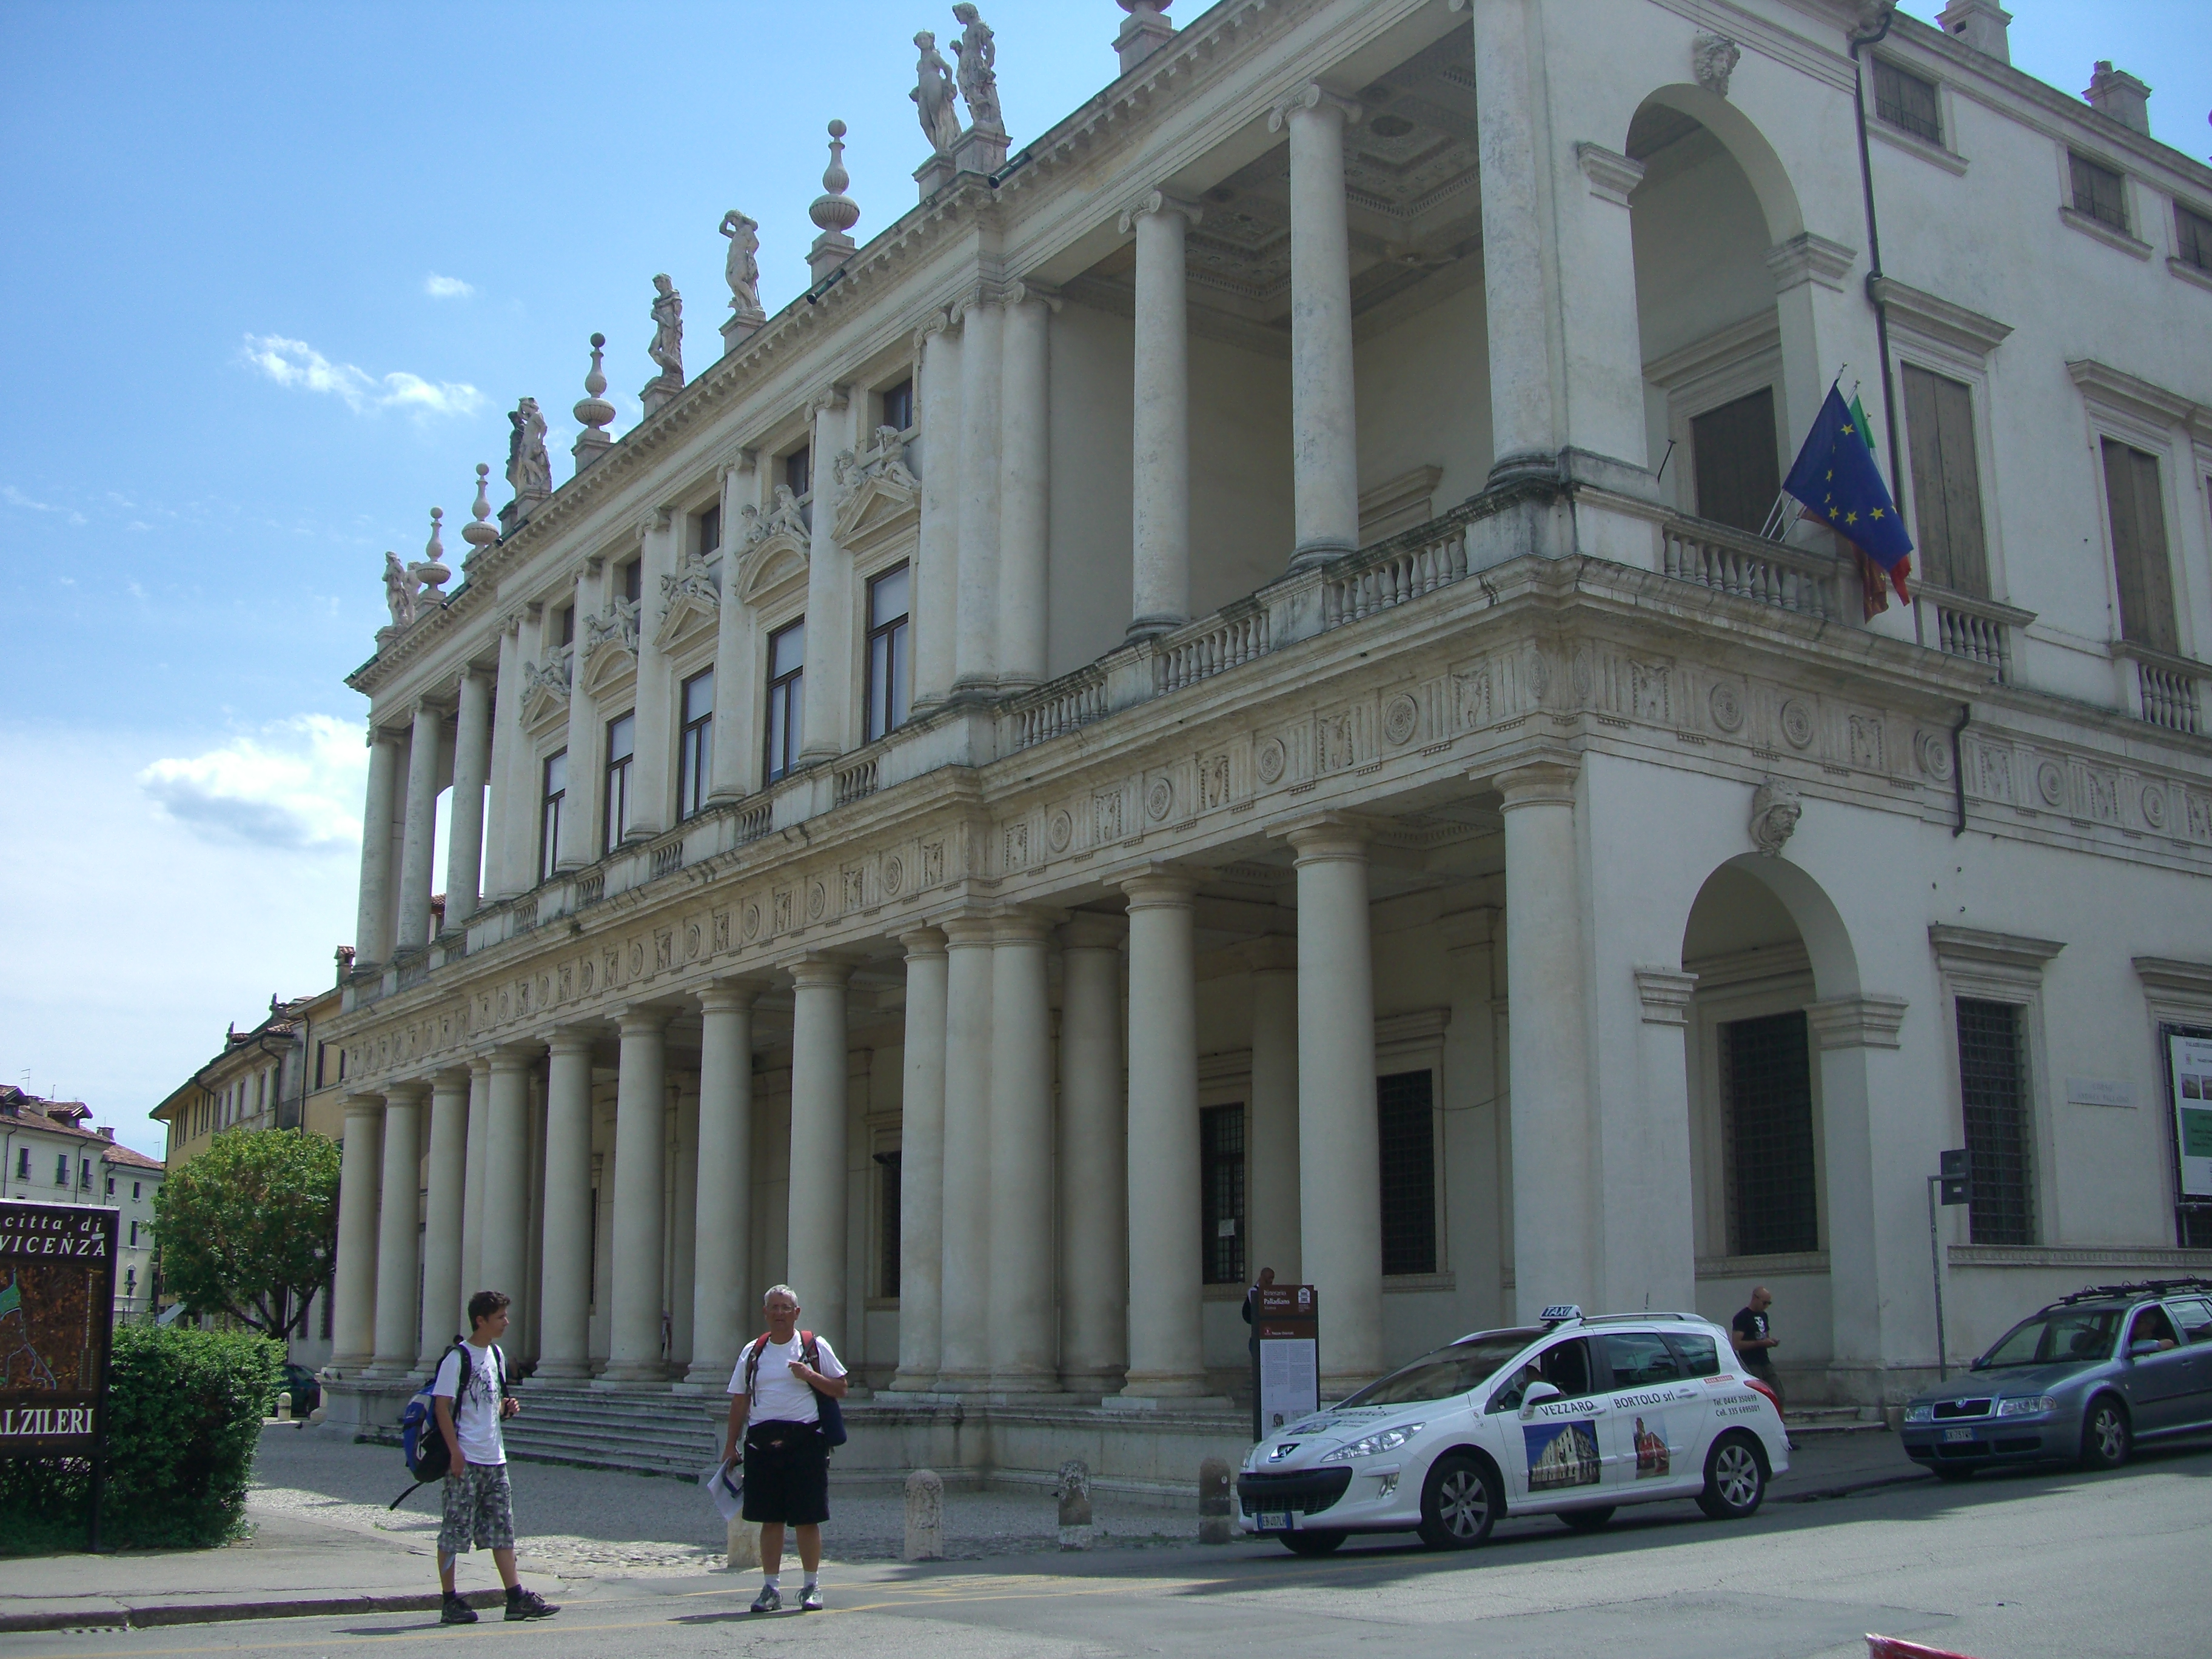 Palazzo Chiericati